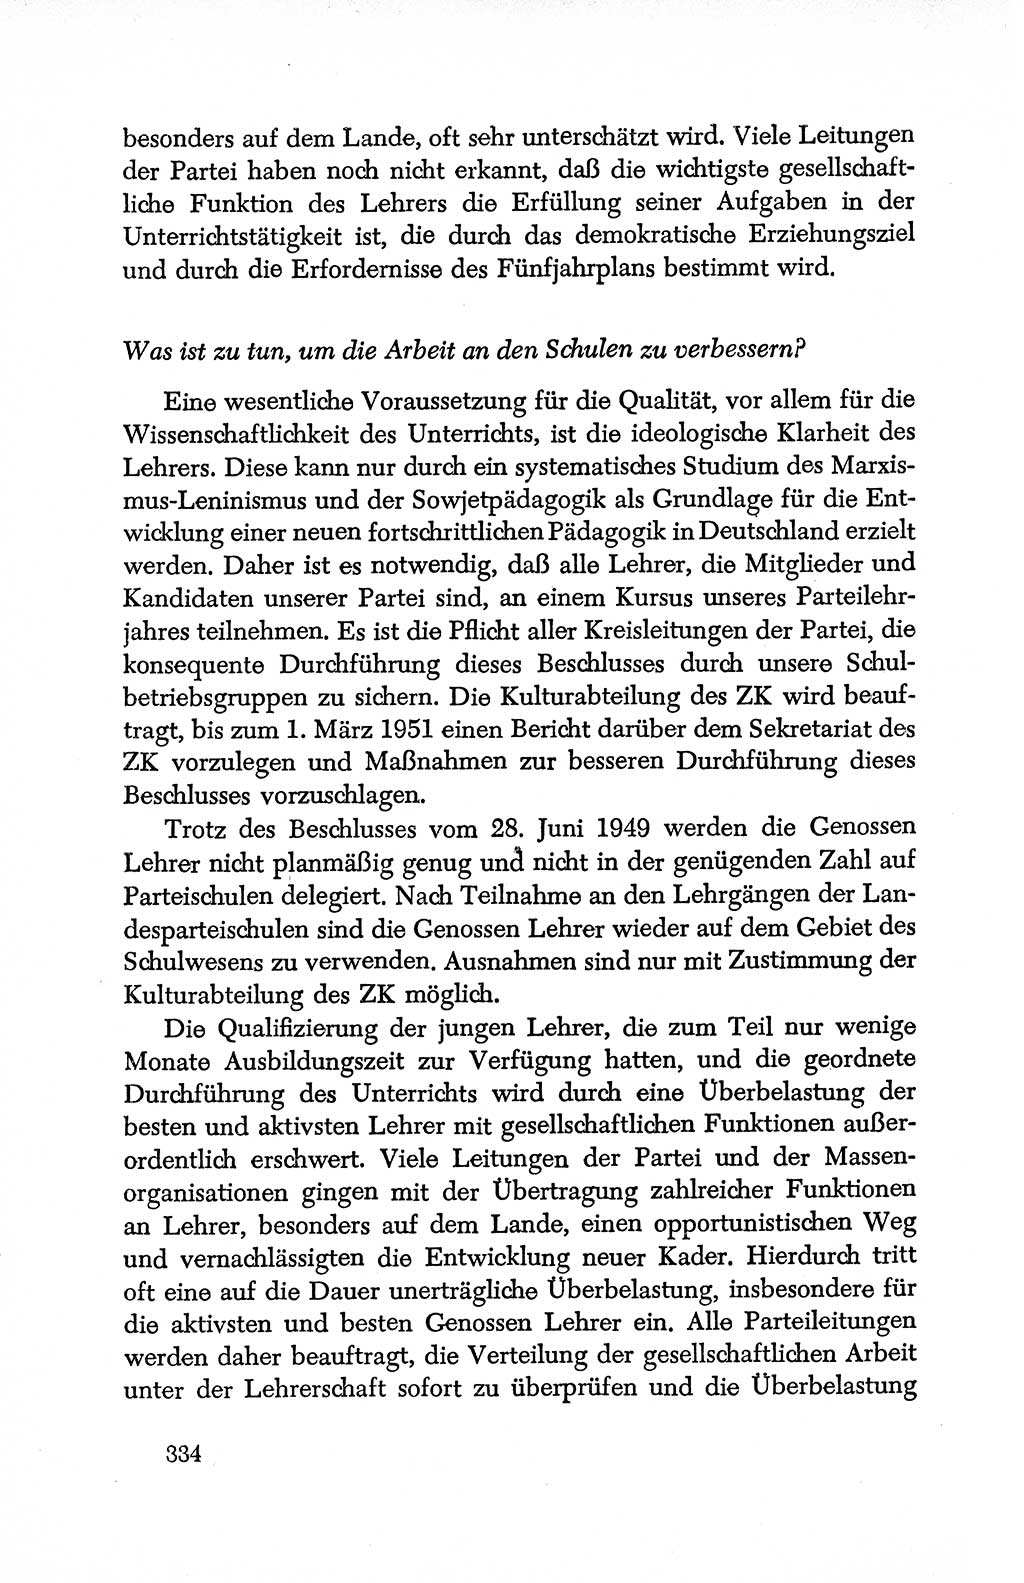 Dokumente der Sozialistischen Einheitspartei Deutschlands (SED) [Deutsche Demokratische Republik (DDR)] 1950-1952, Seite 334 (Dok. SED DDR 1950-1952, S. 334)